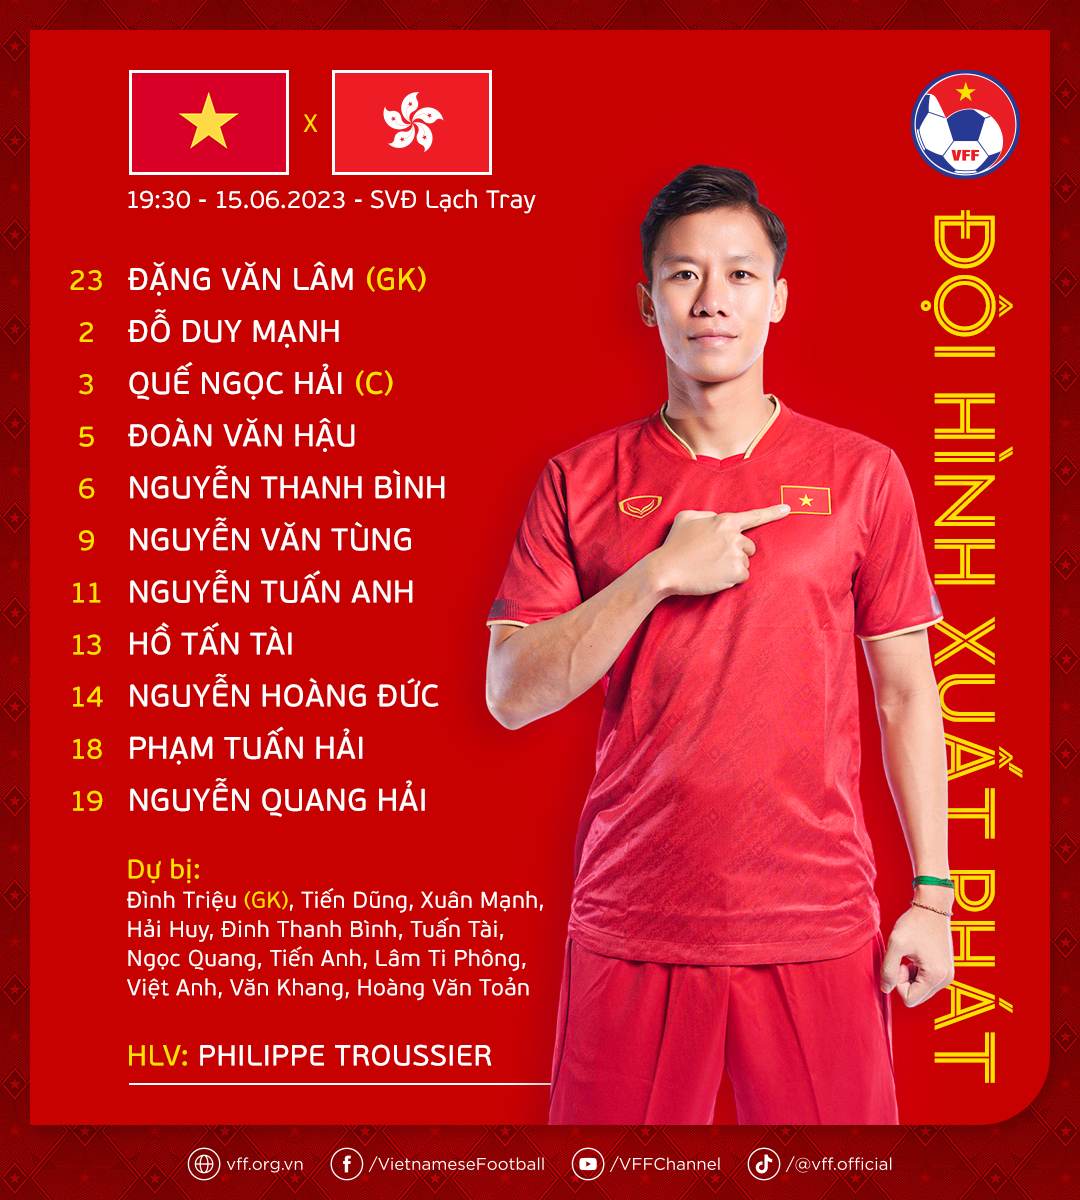 Tổng hợp biệt danh của các cầu thủ đội tuyển Việt Nam